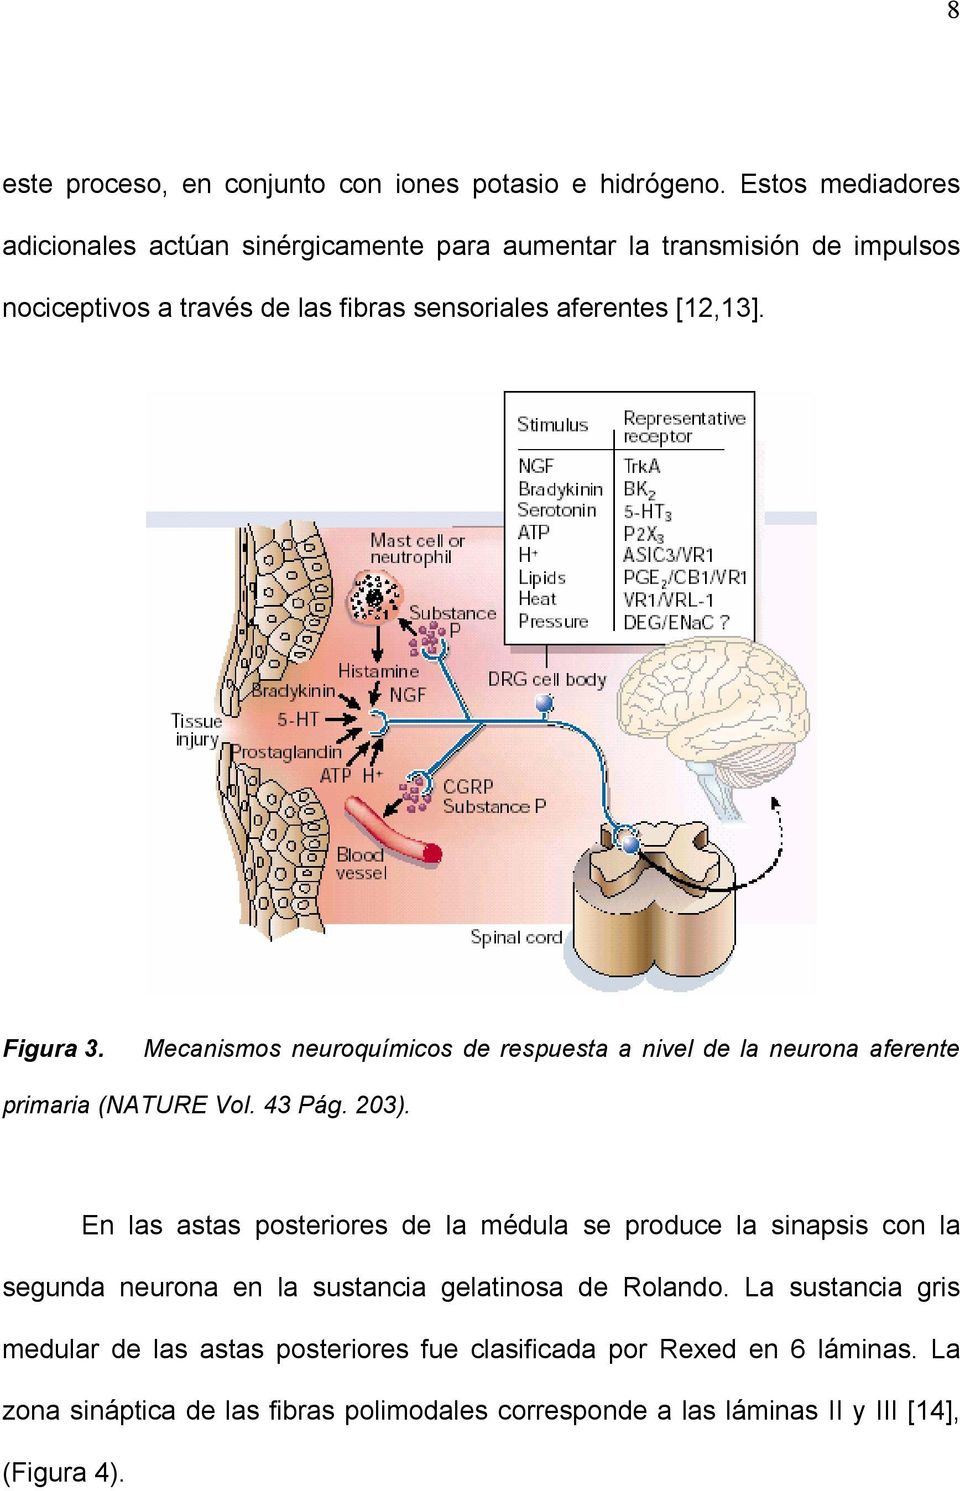 Figura 3. Mecanismos neuroquímicos de respuesta a nivel de la neurona aferente primaria (NATURE Vol. 43 Pág. 203).